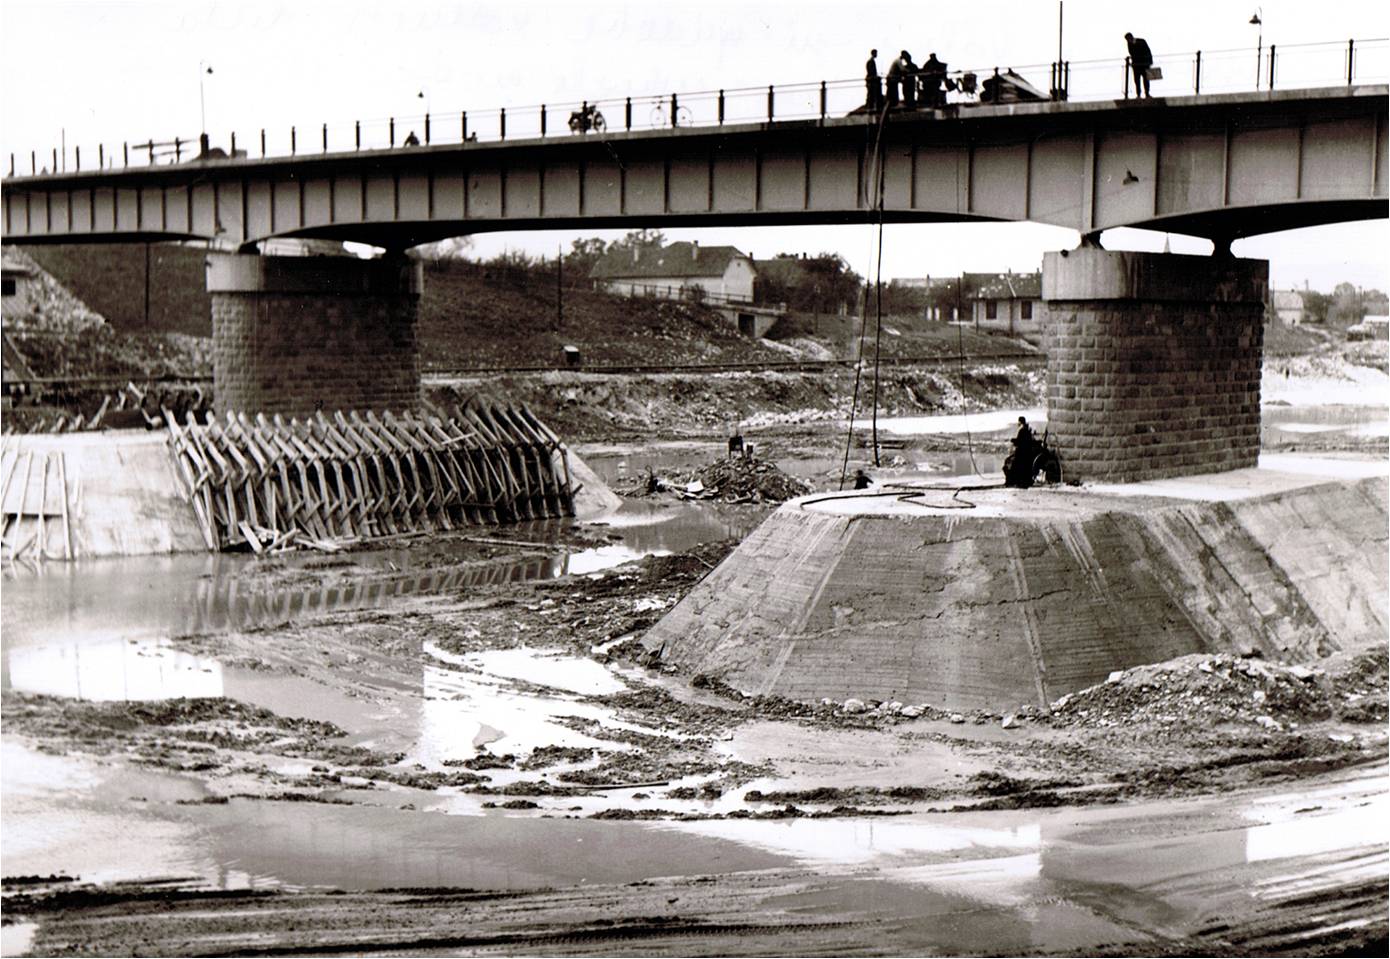 prehlbovanie dna Váhu a spevnenie základov mosta v r. 1956